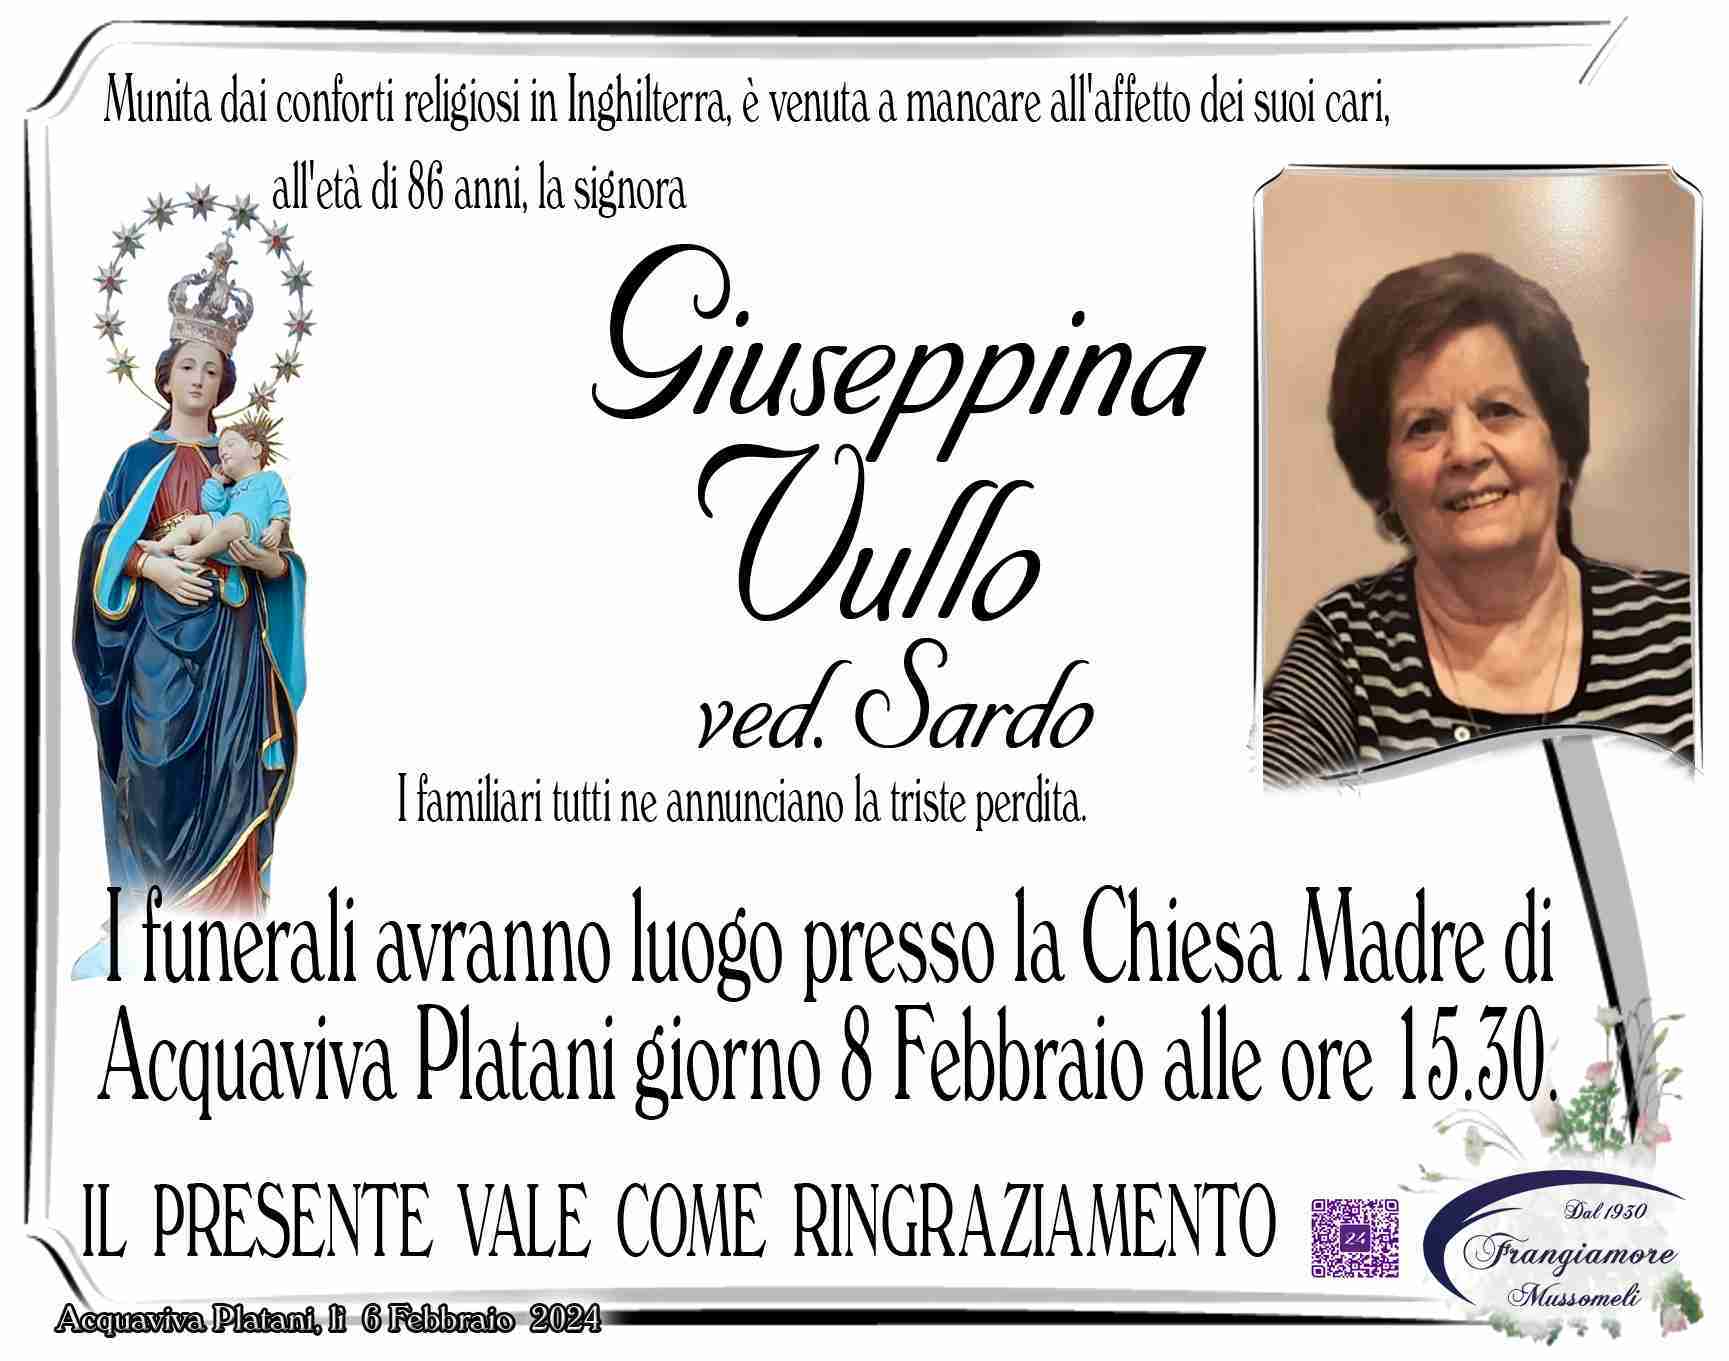 Giuseppina Vullo